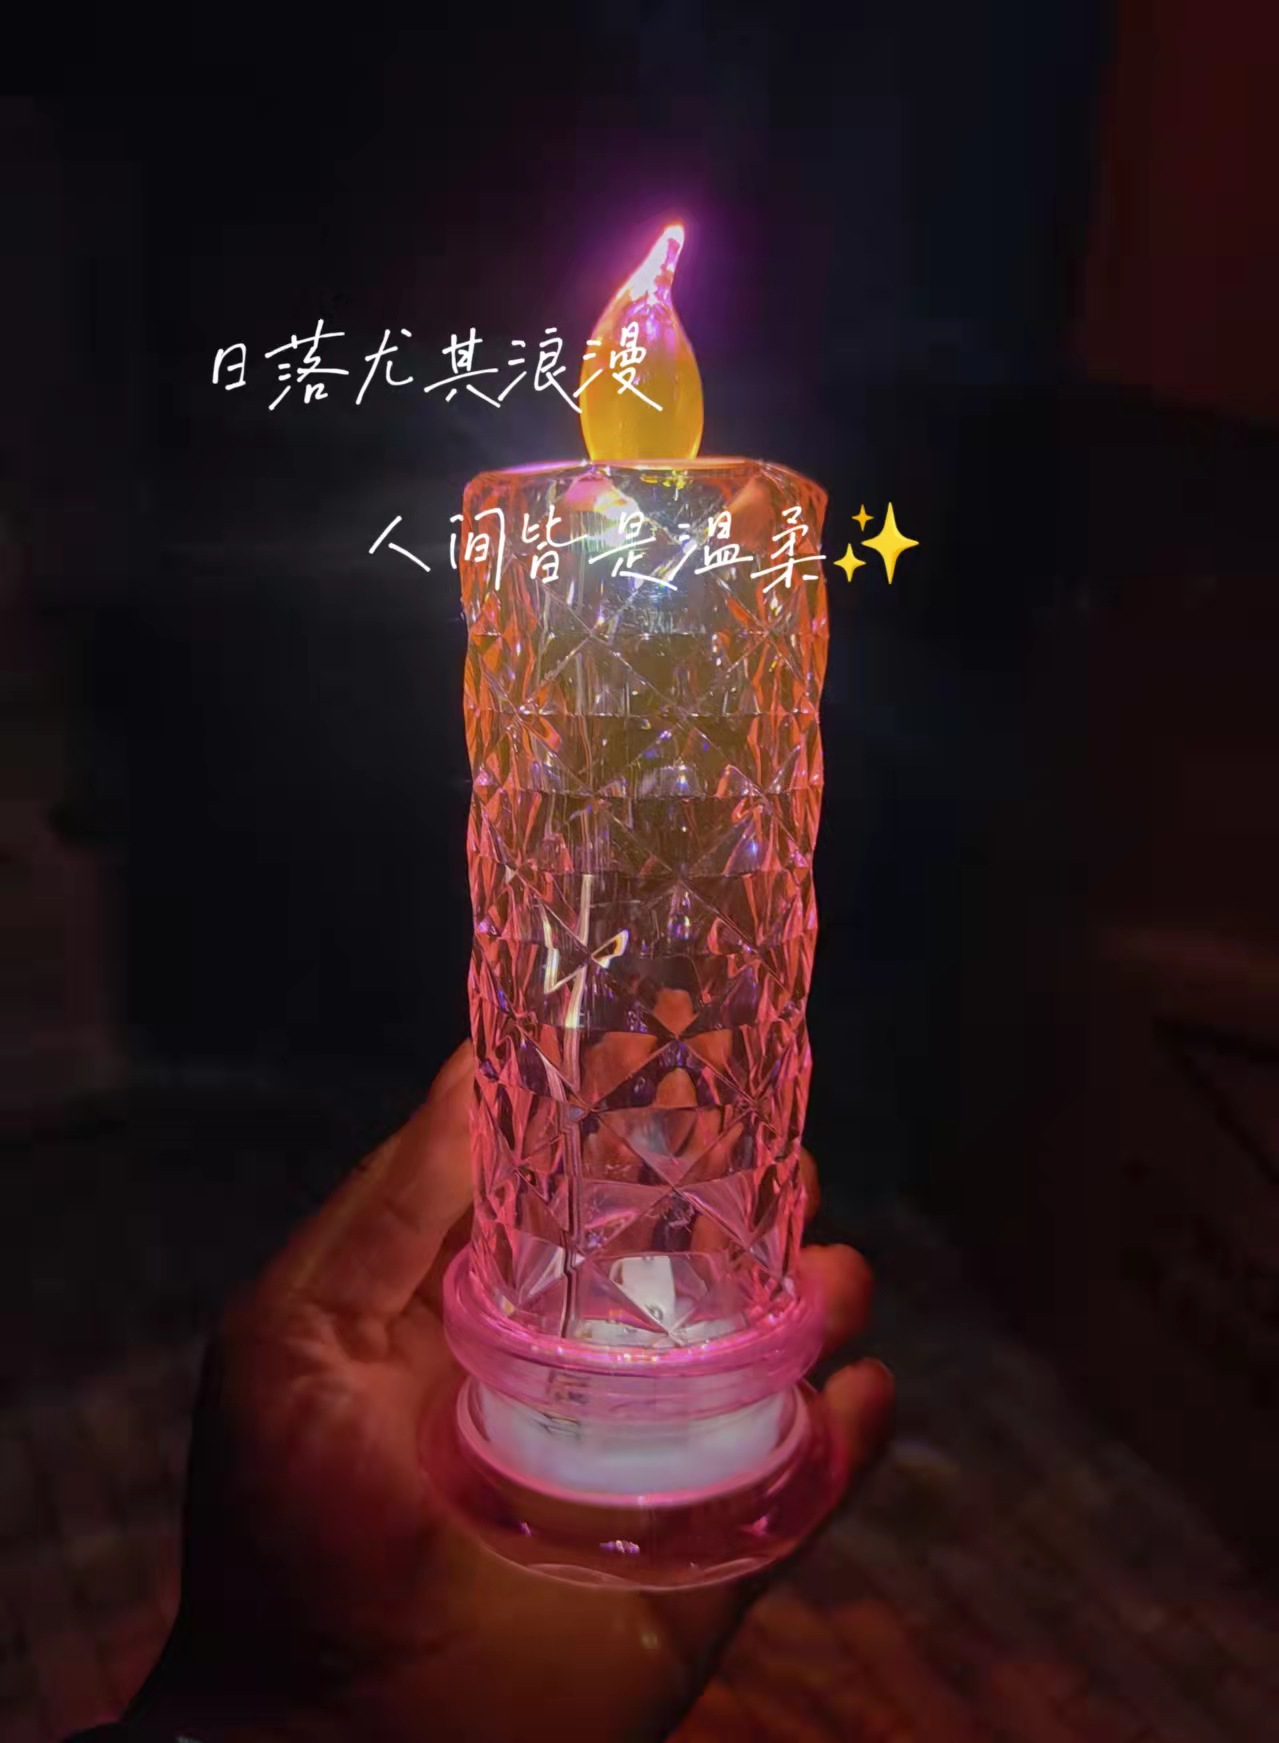 折光投影玫瑰花纹蜡烛灯 烘托气氛小夜灯仿水晶LED灯创意礼品图